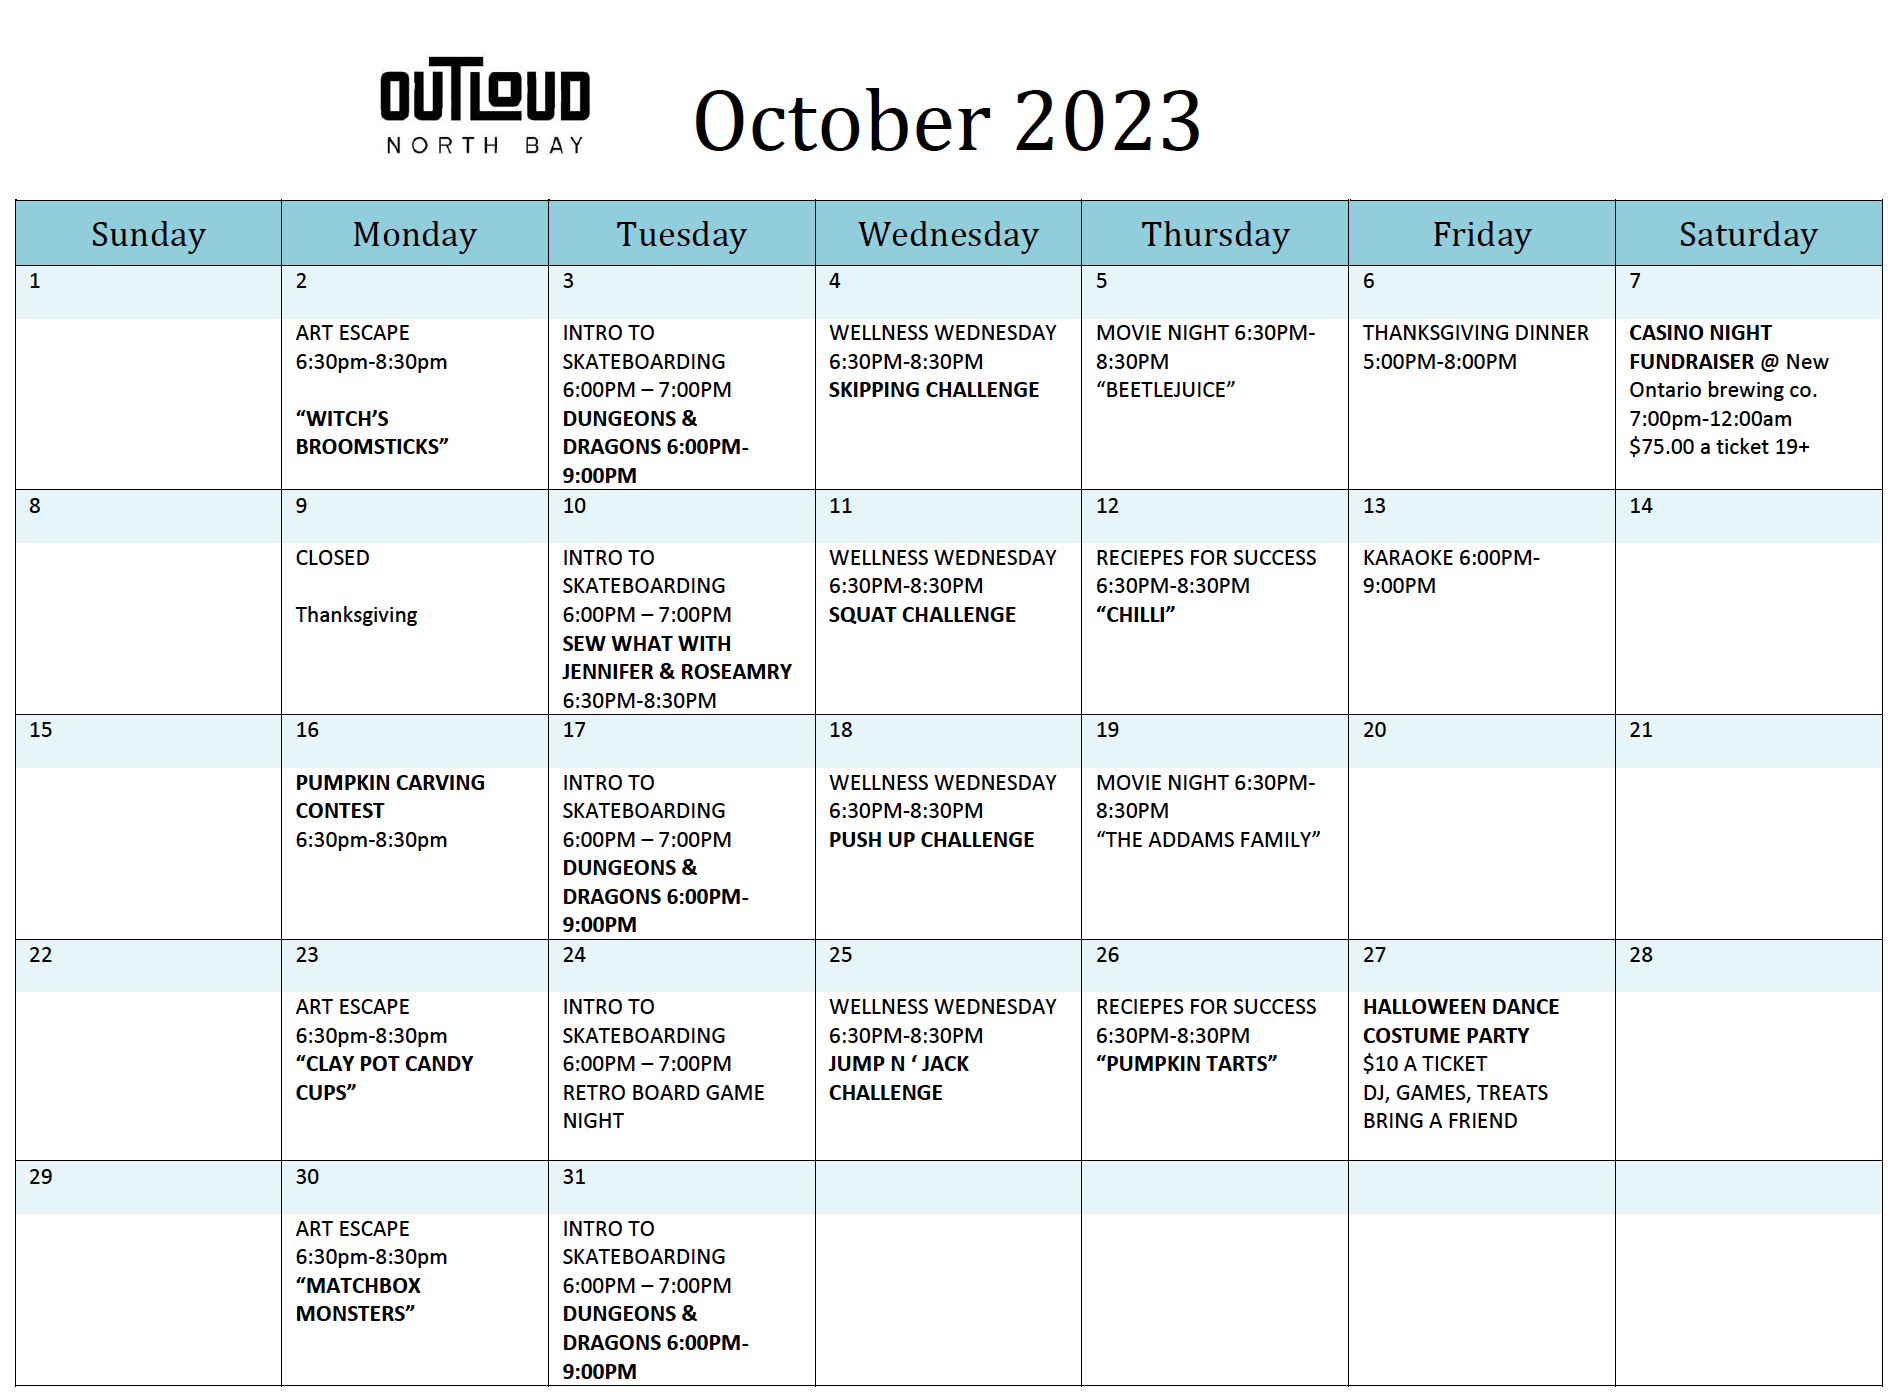 october outloud schedule